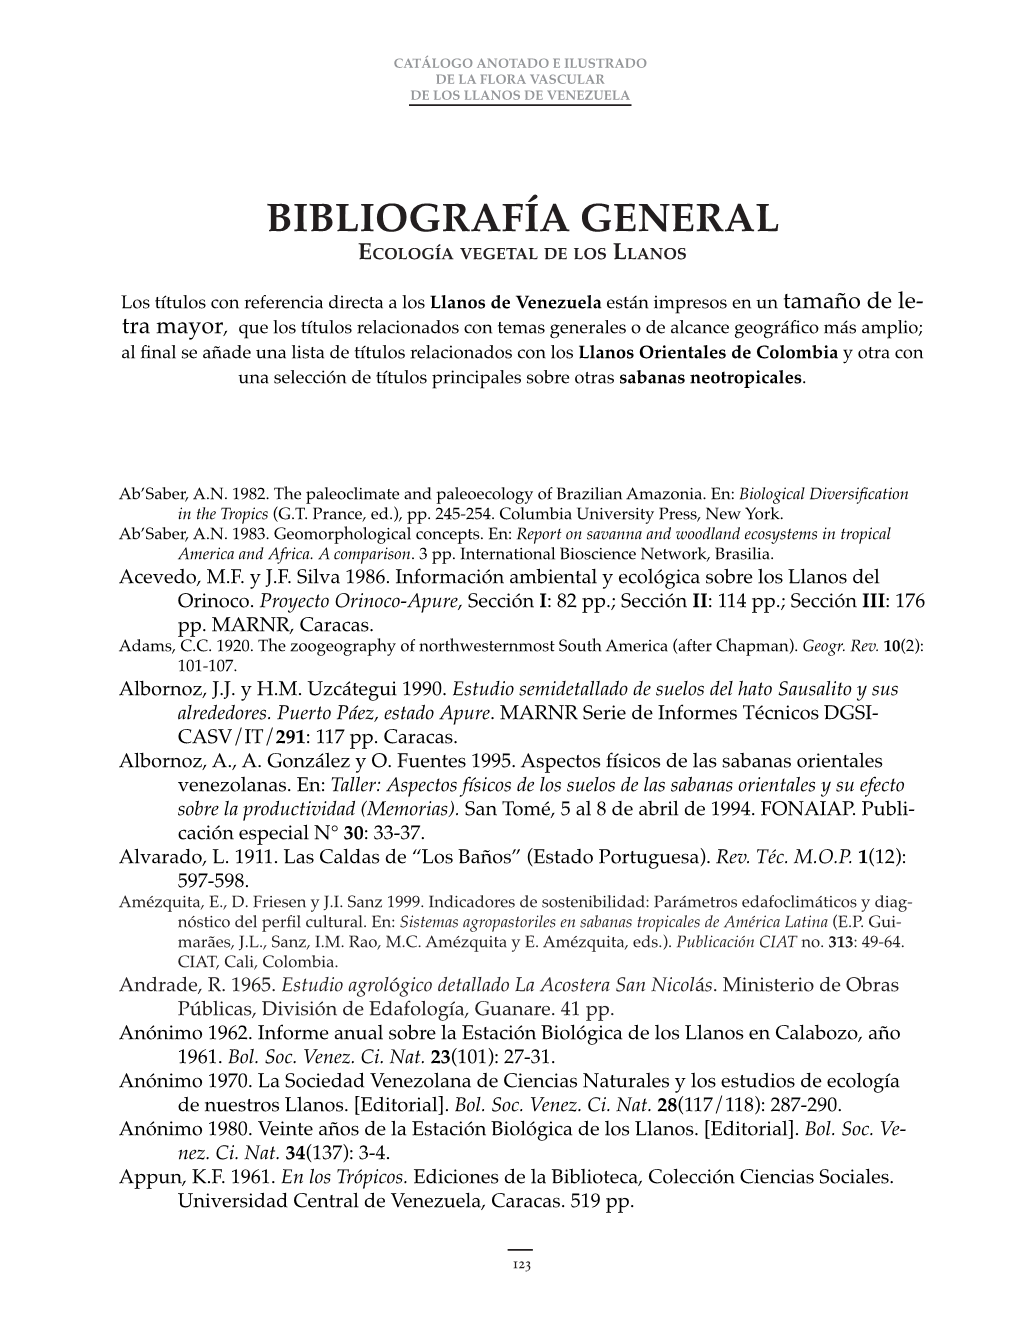 Bibliografía General Ecología Vegetal De Los Llanos